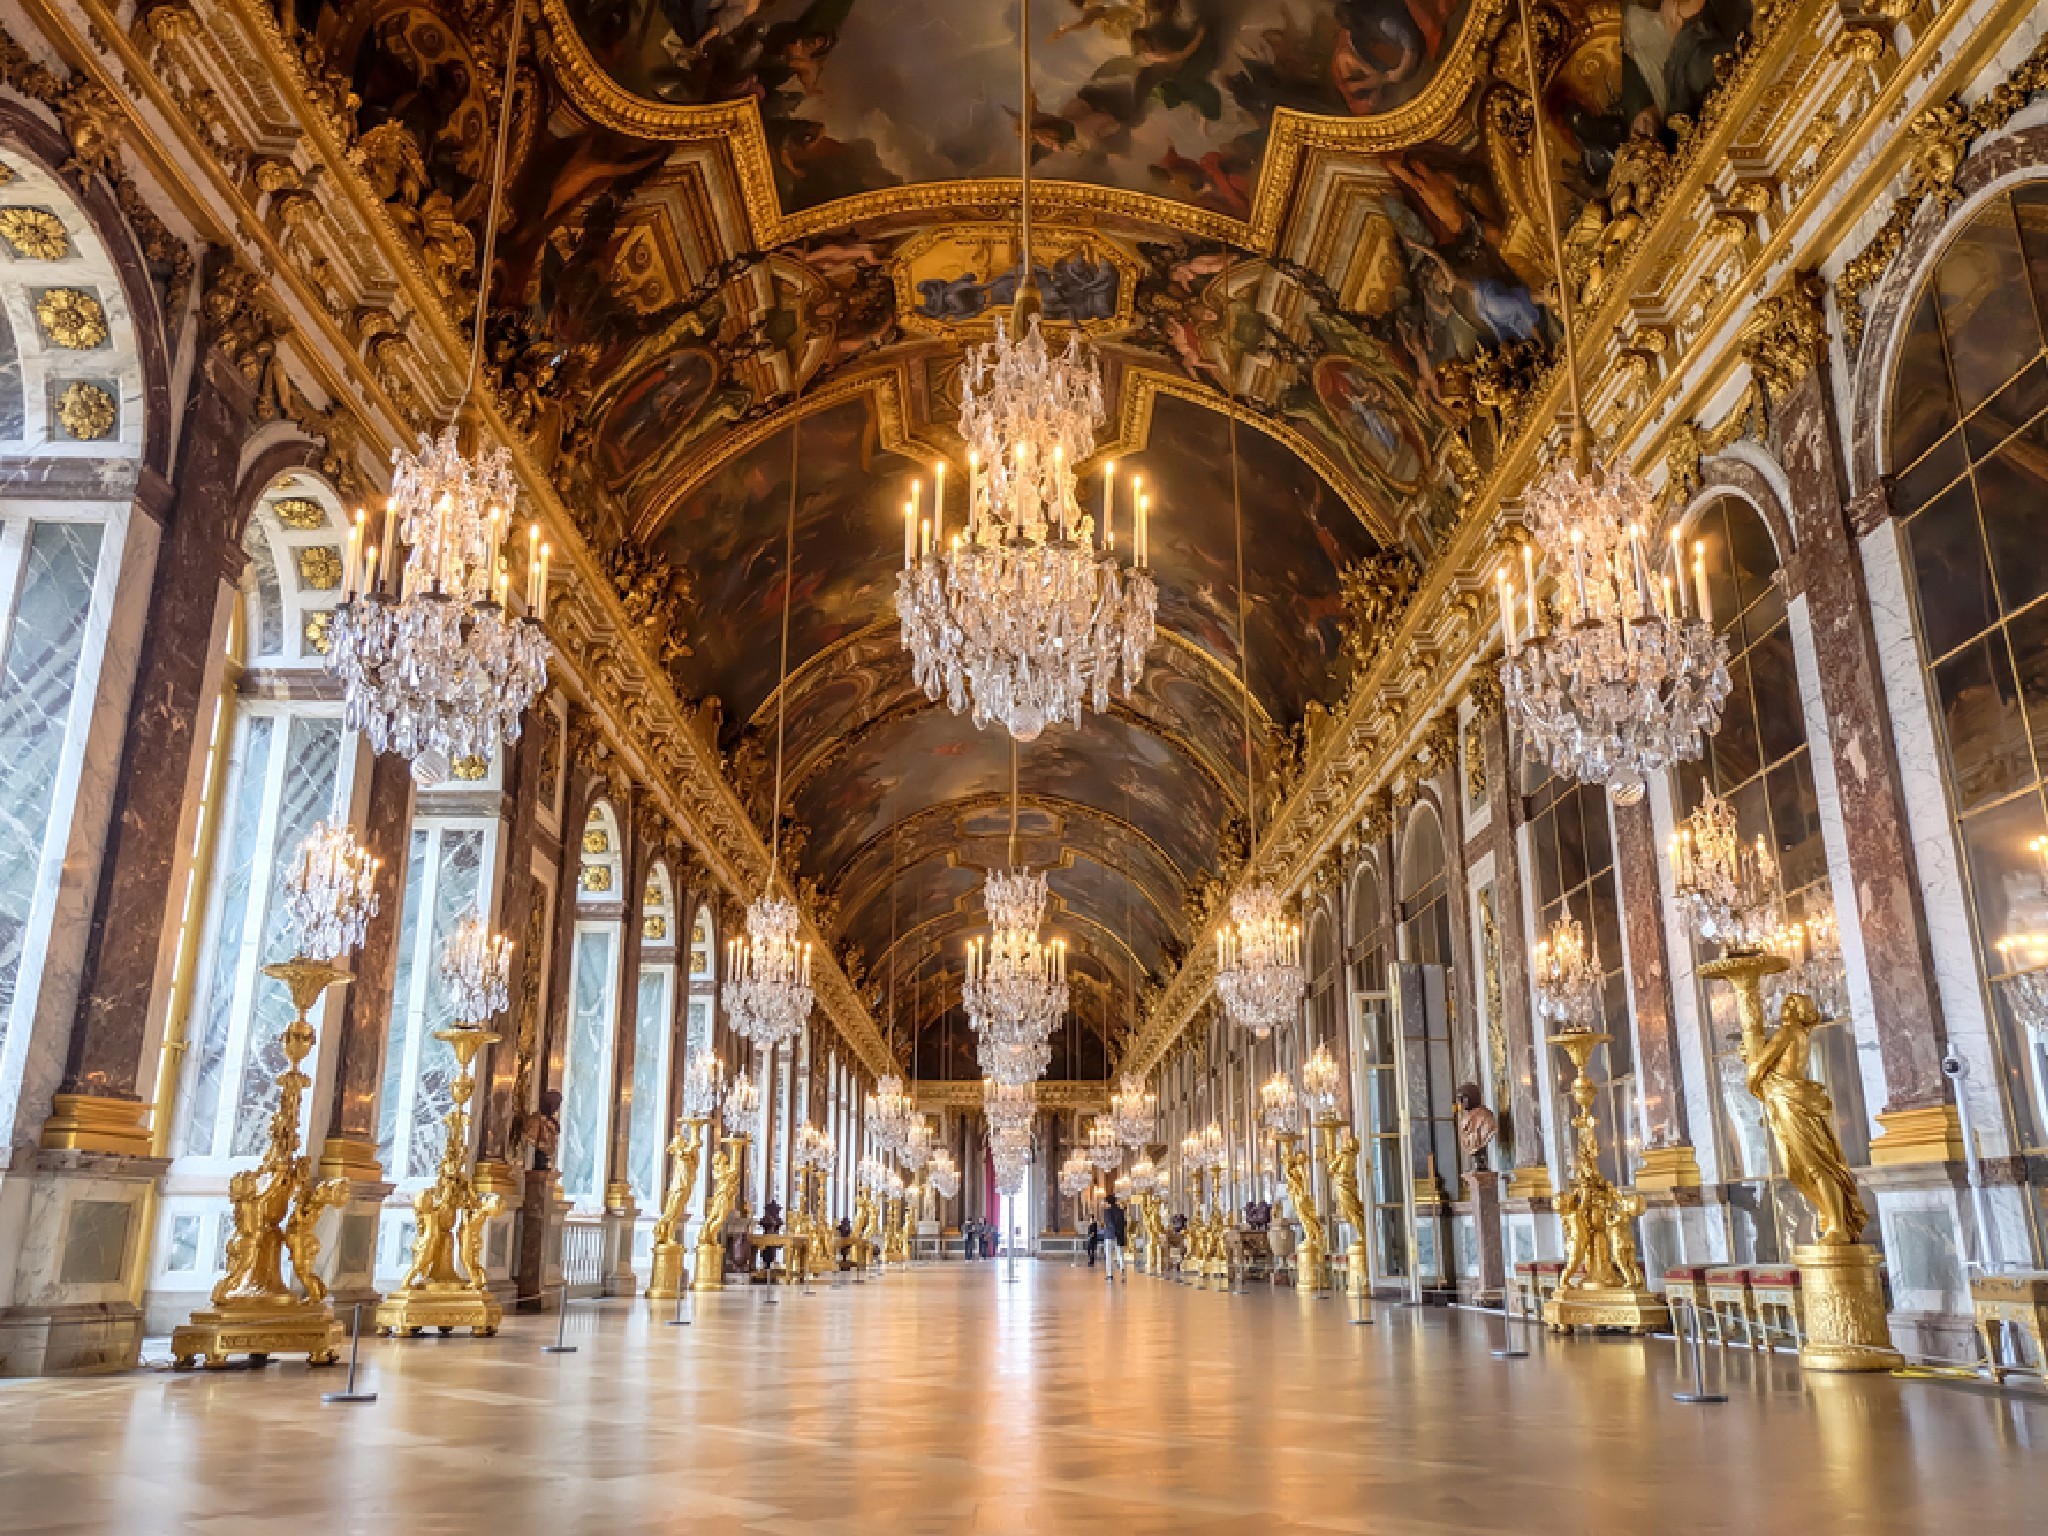 Hall o. Версальский дворец Версаль Барокко. Зеркальная галерея Версальского дворца. Версаль Франция Барокко.